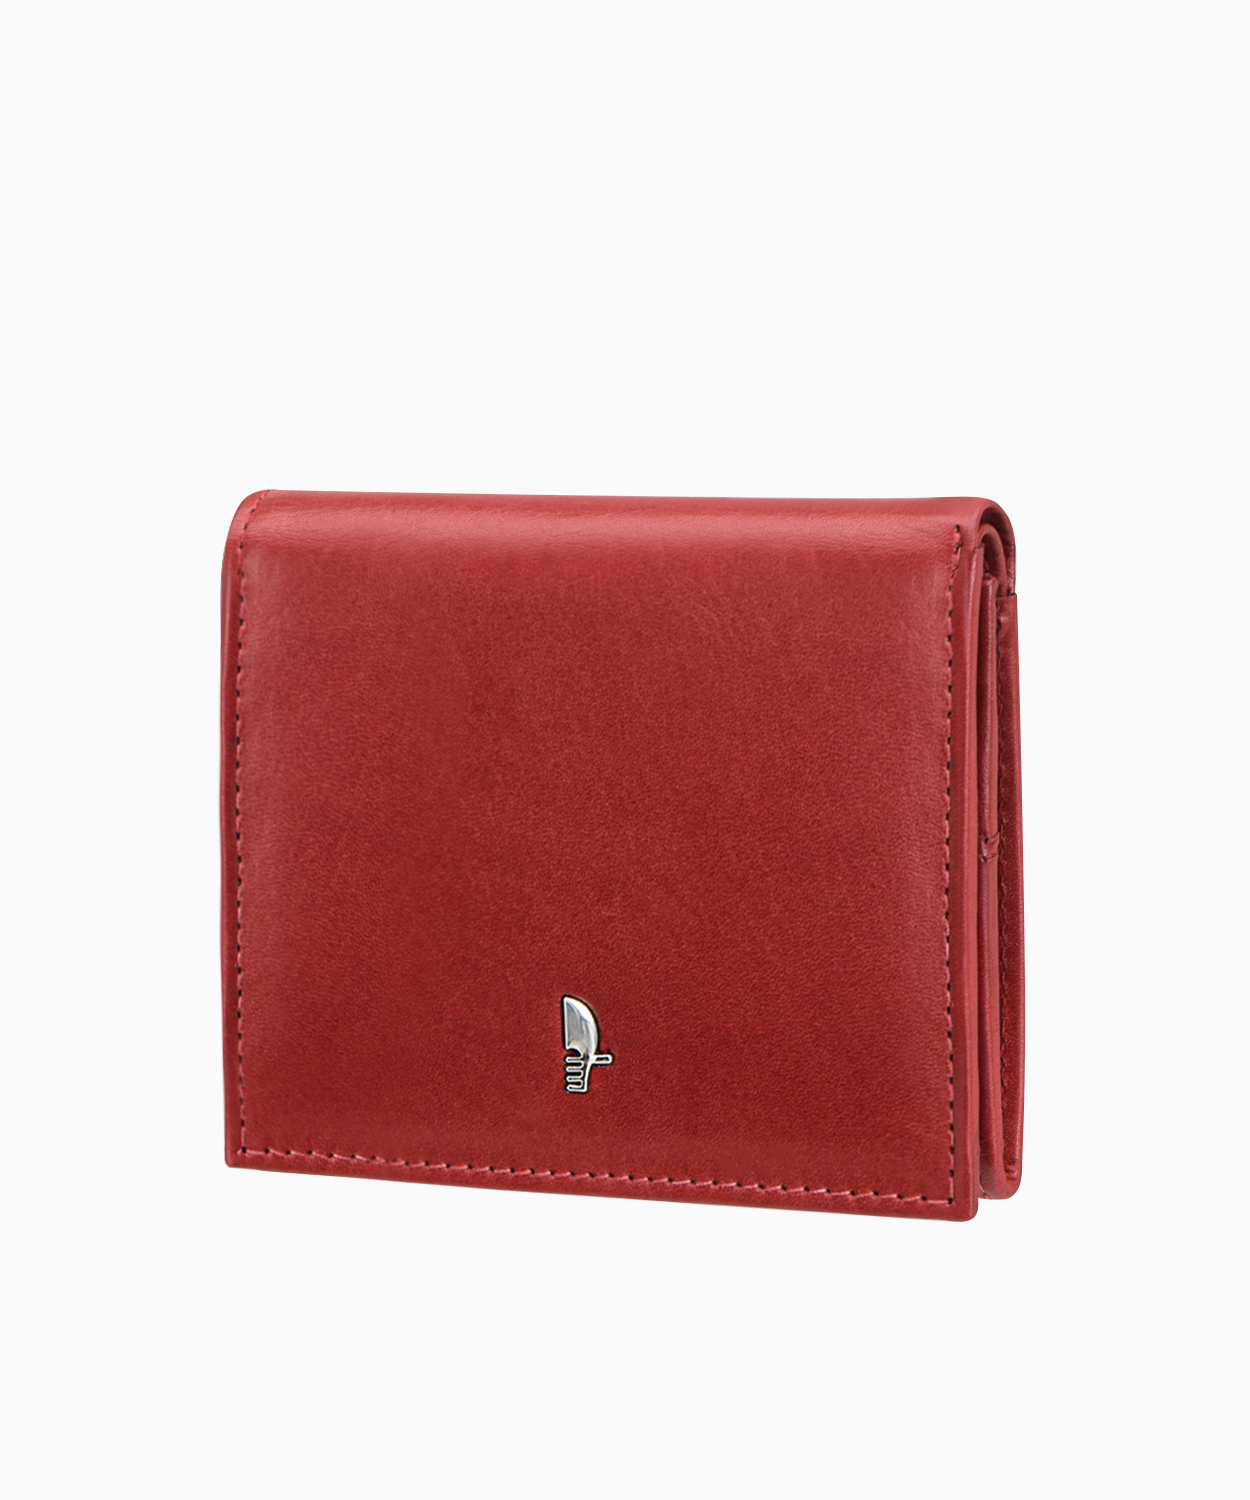 PUCCINI Damski mały skórzany portfel w kolorze czerwonym